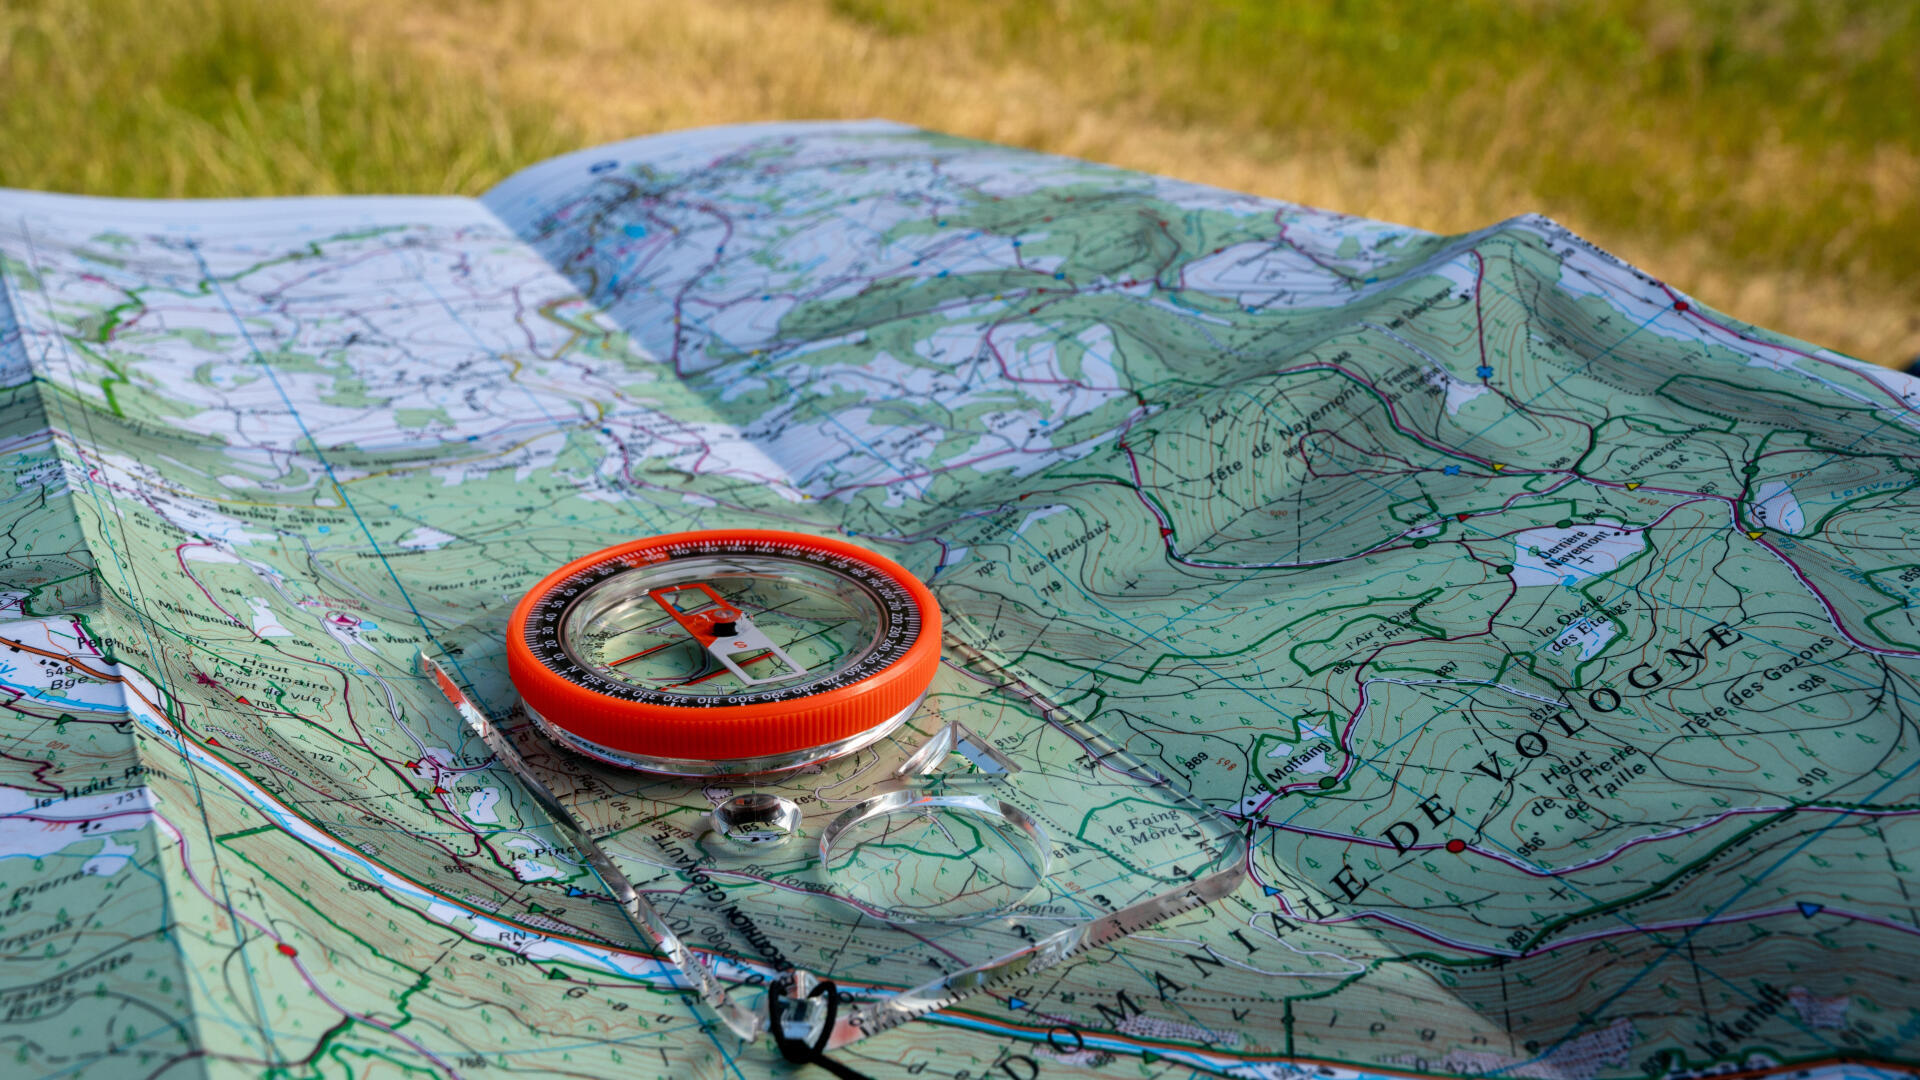 Lire une carte de randonnée : la rédaction vous explique tout